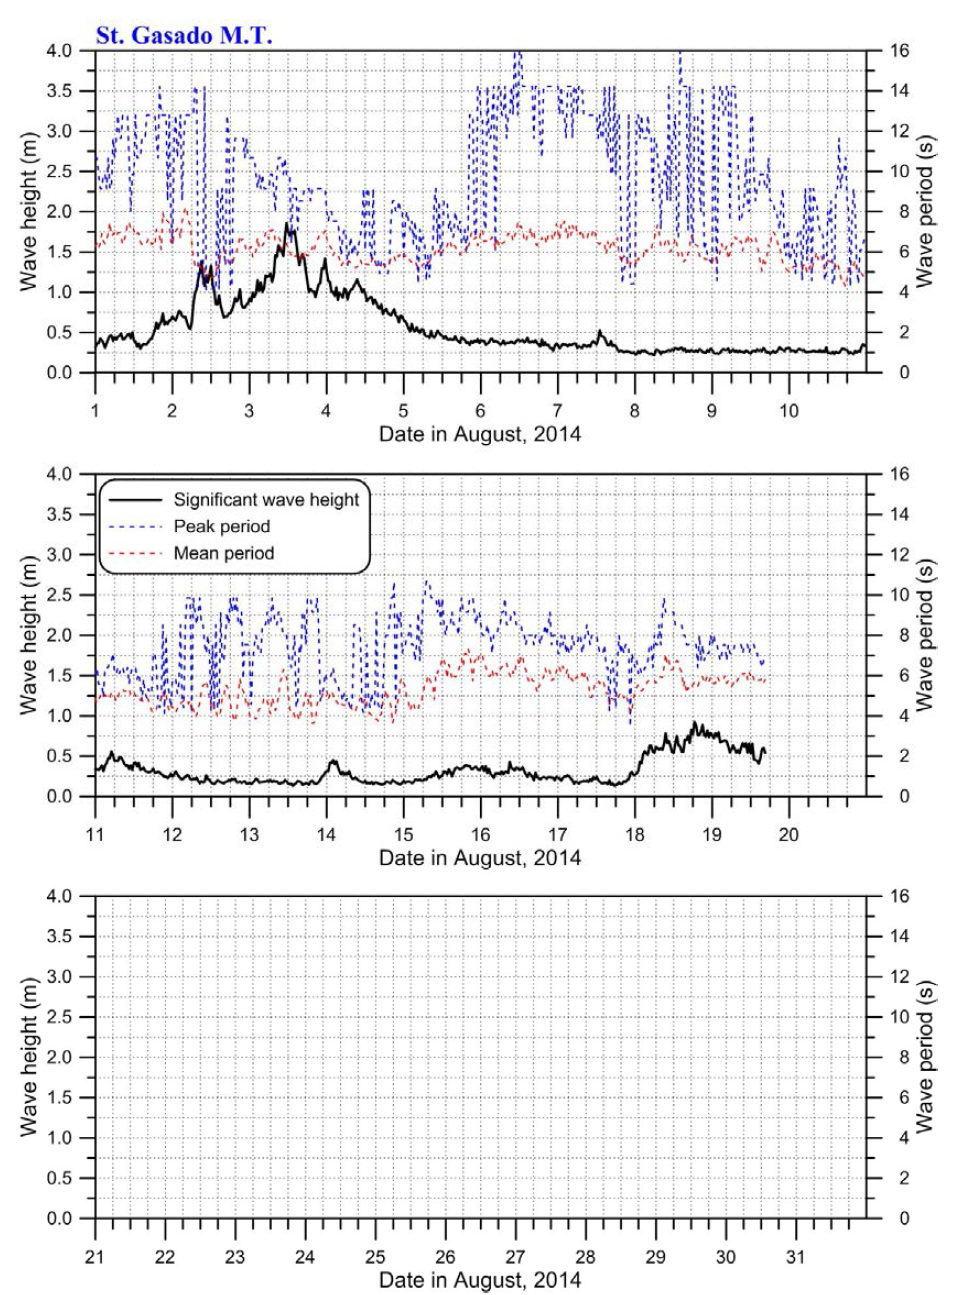 2014년 8월에 테스트베드 기상탑에서 관측된 유의파고, 첨두주기 및 평균주기